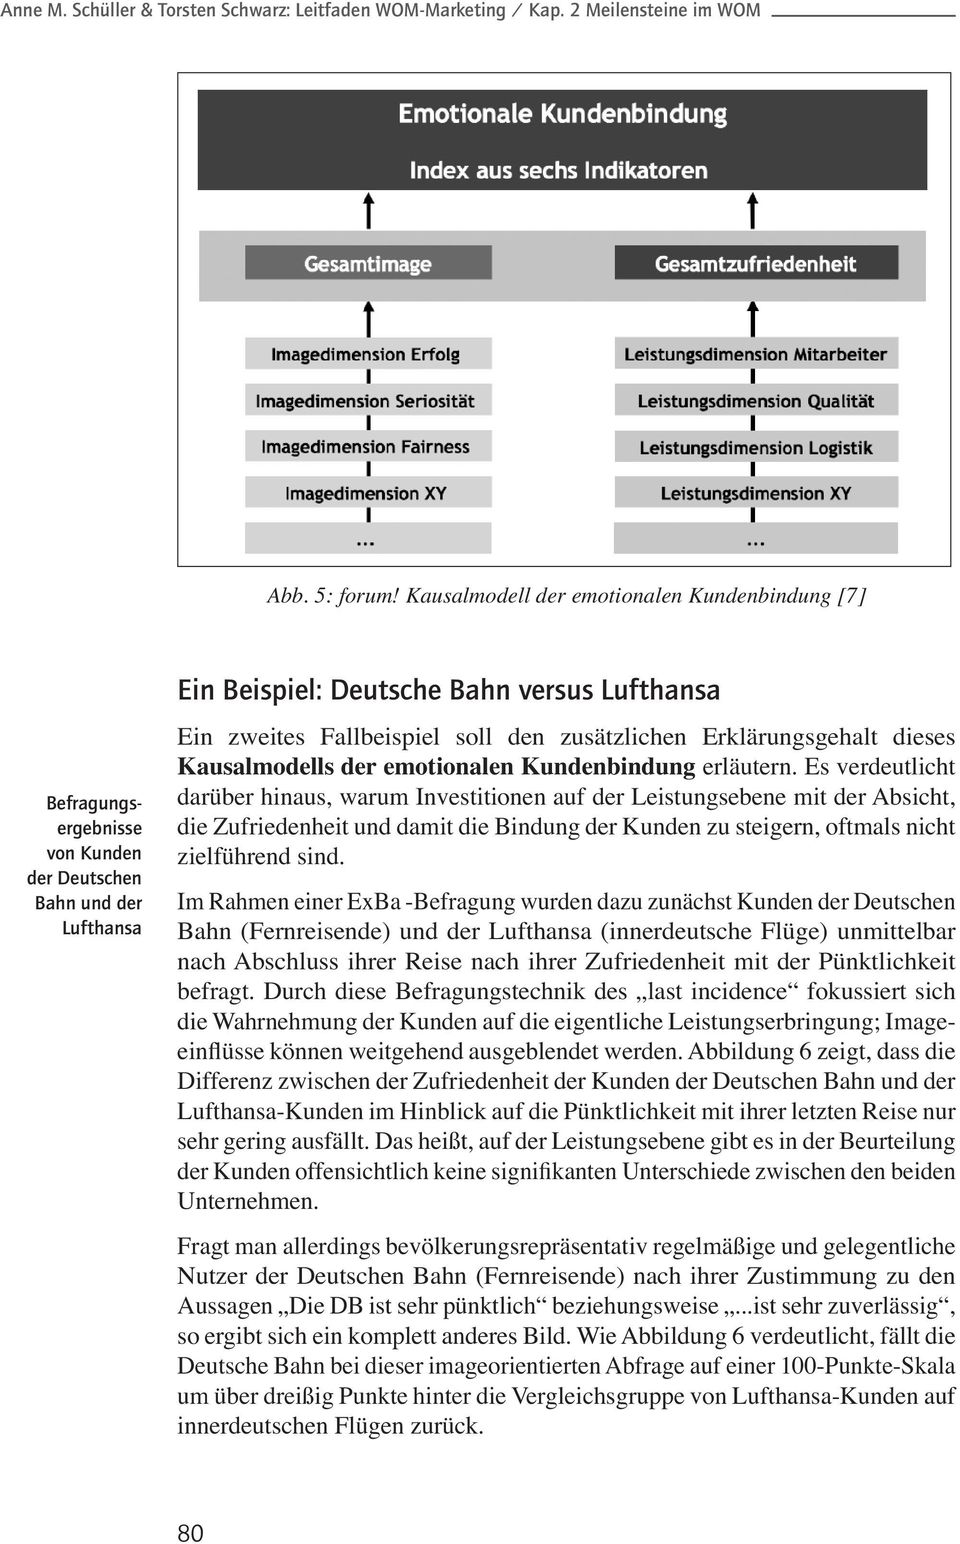 Im Rahmen einer ExBa -Befragung wurden dazu zunächst Kunden der Deutschen Bahn (Fernreisende) und der Lufthansa (innerdeutsche Flüge) unmittelbar nach Abschluss ihrer Reise nach ihrer Zufriedenheit